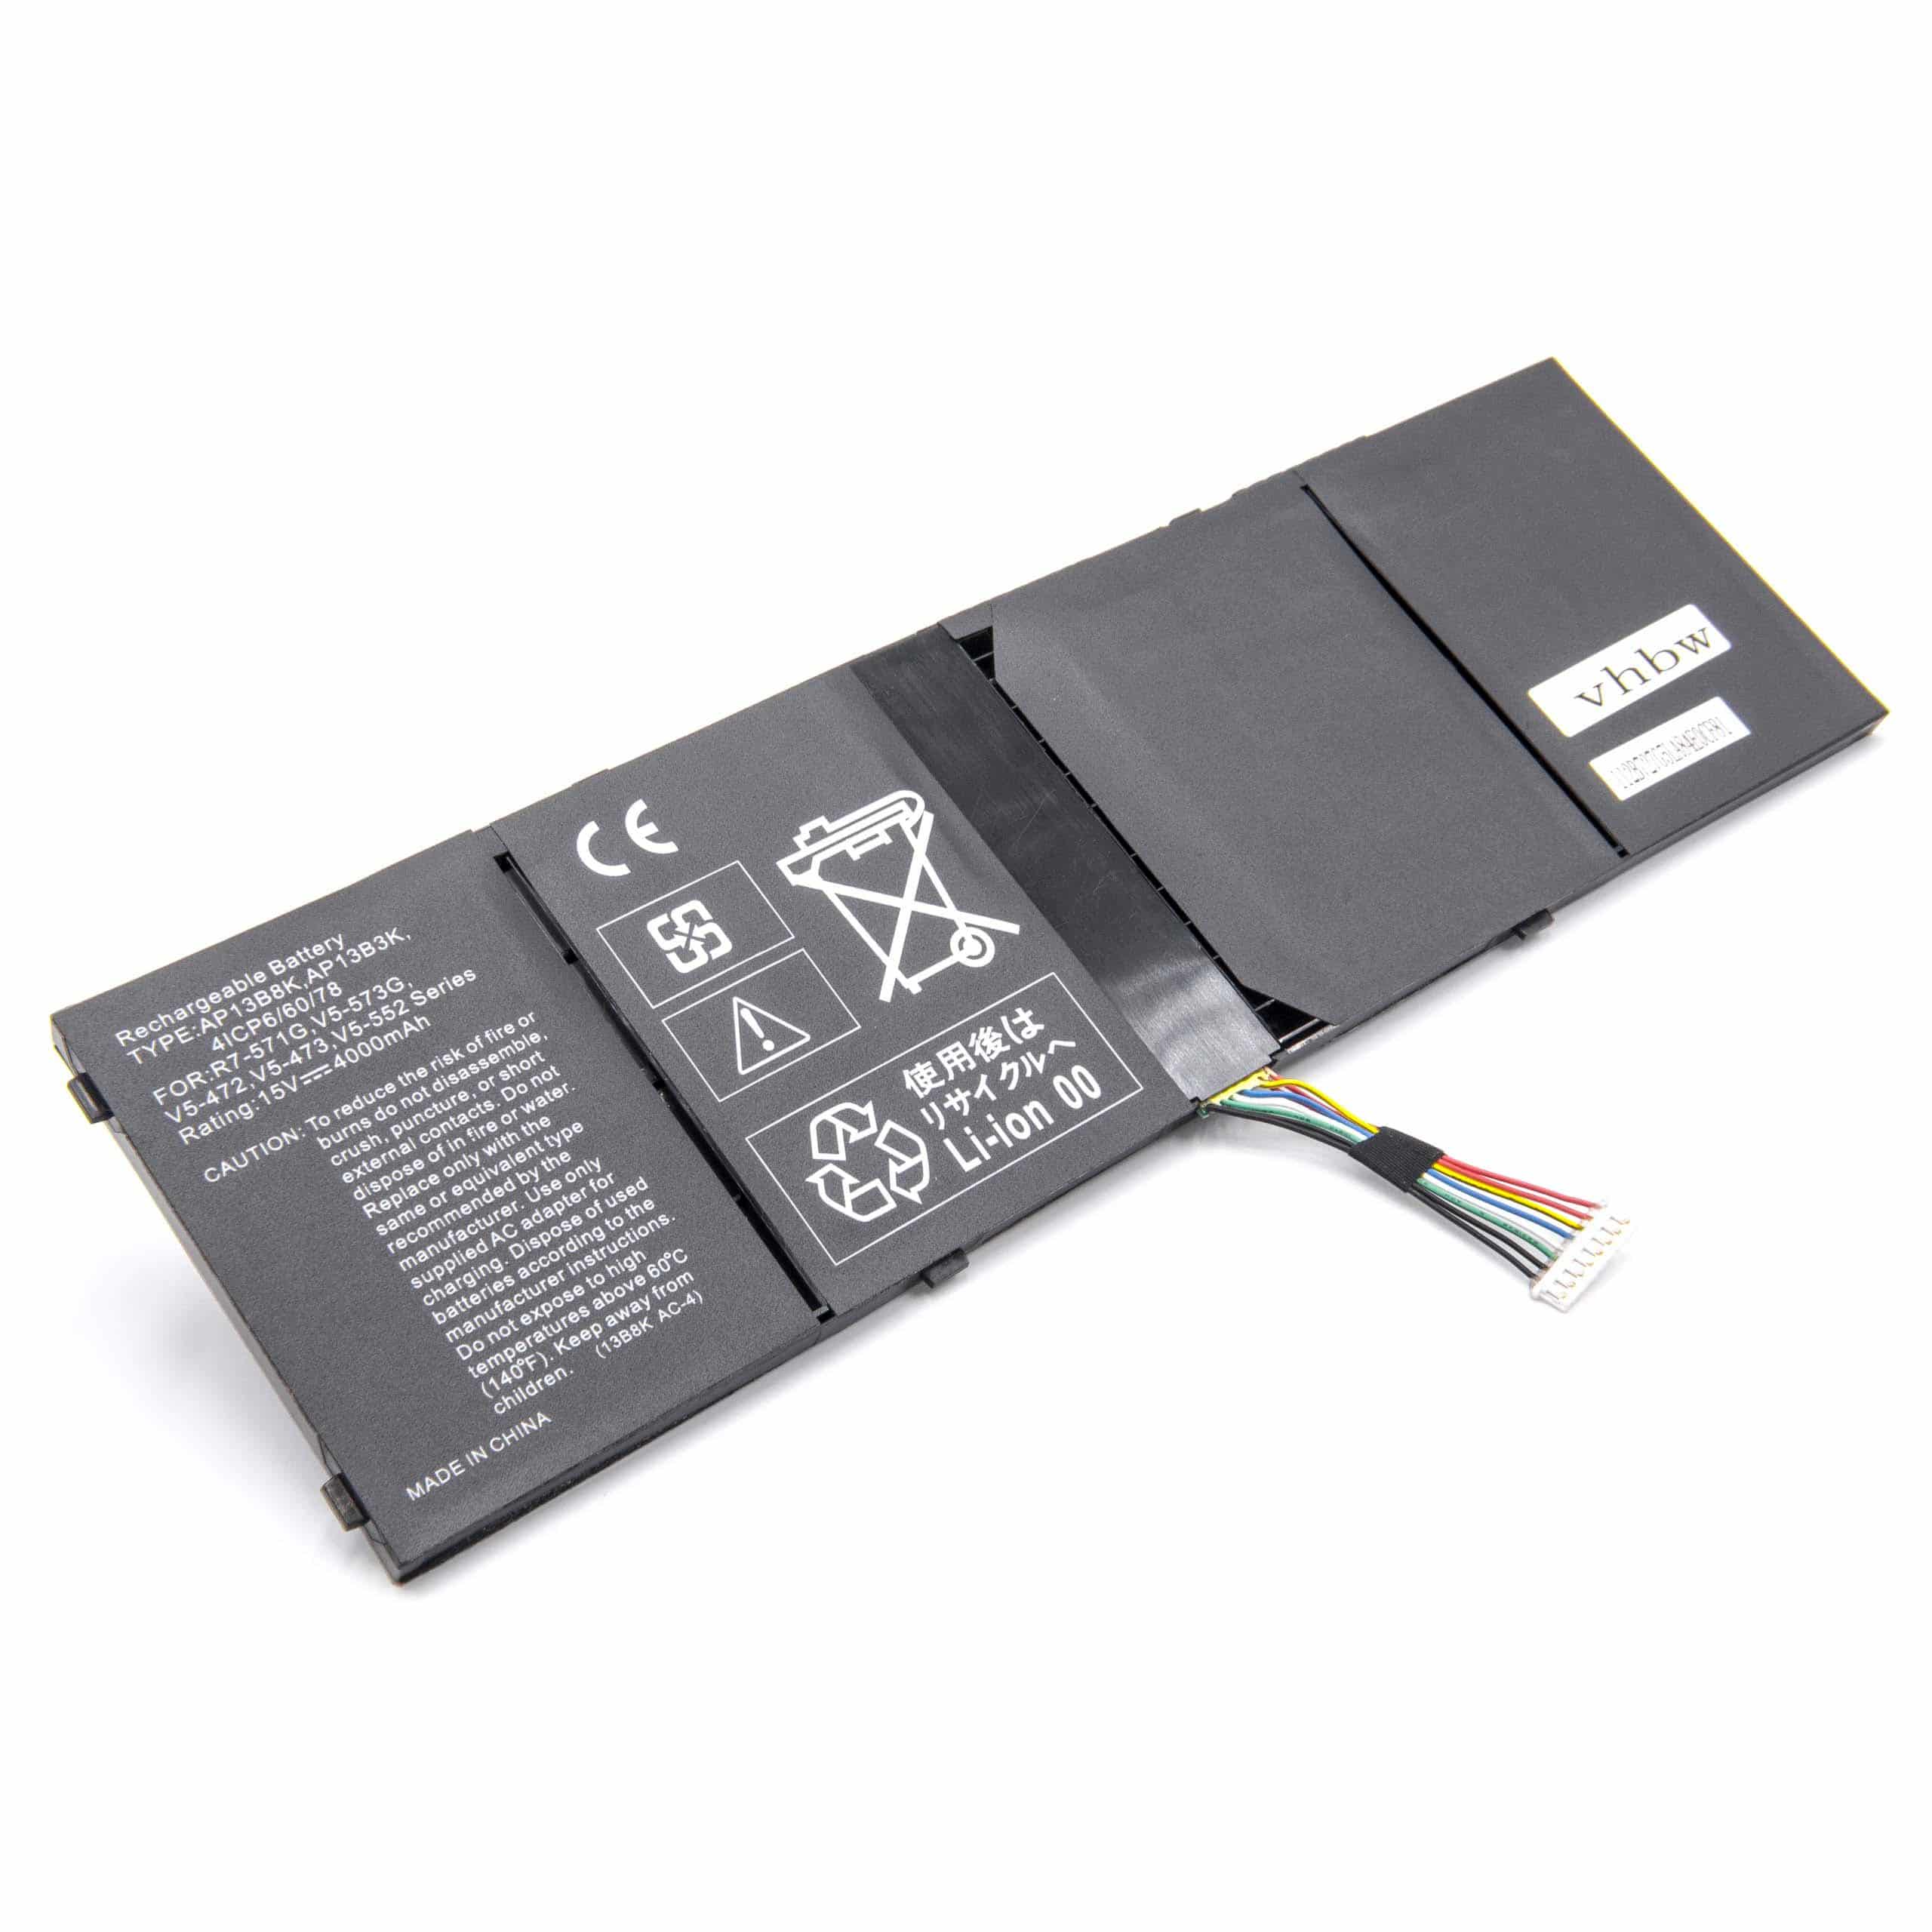 Batterie remplace Acer 41CP6/60/80, 41CP6/60/78 pour ordinateur portable - 4000mAh 15V Li-ion, noir